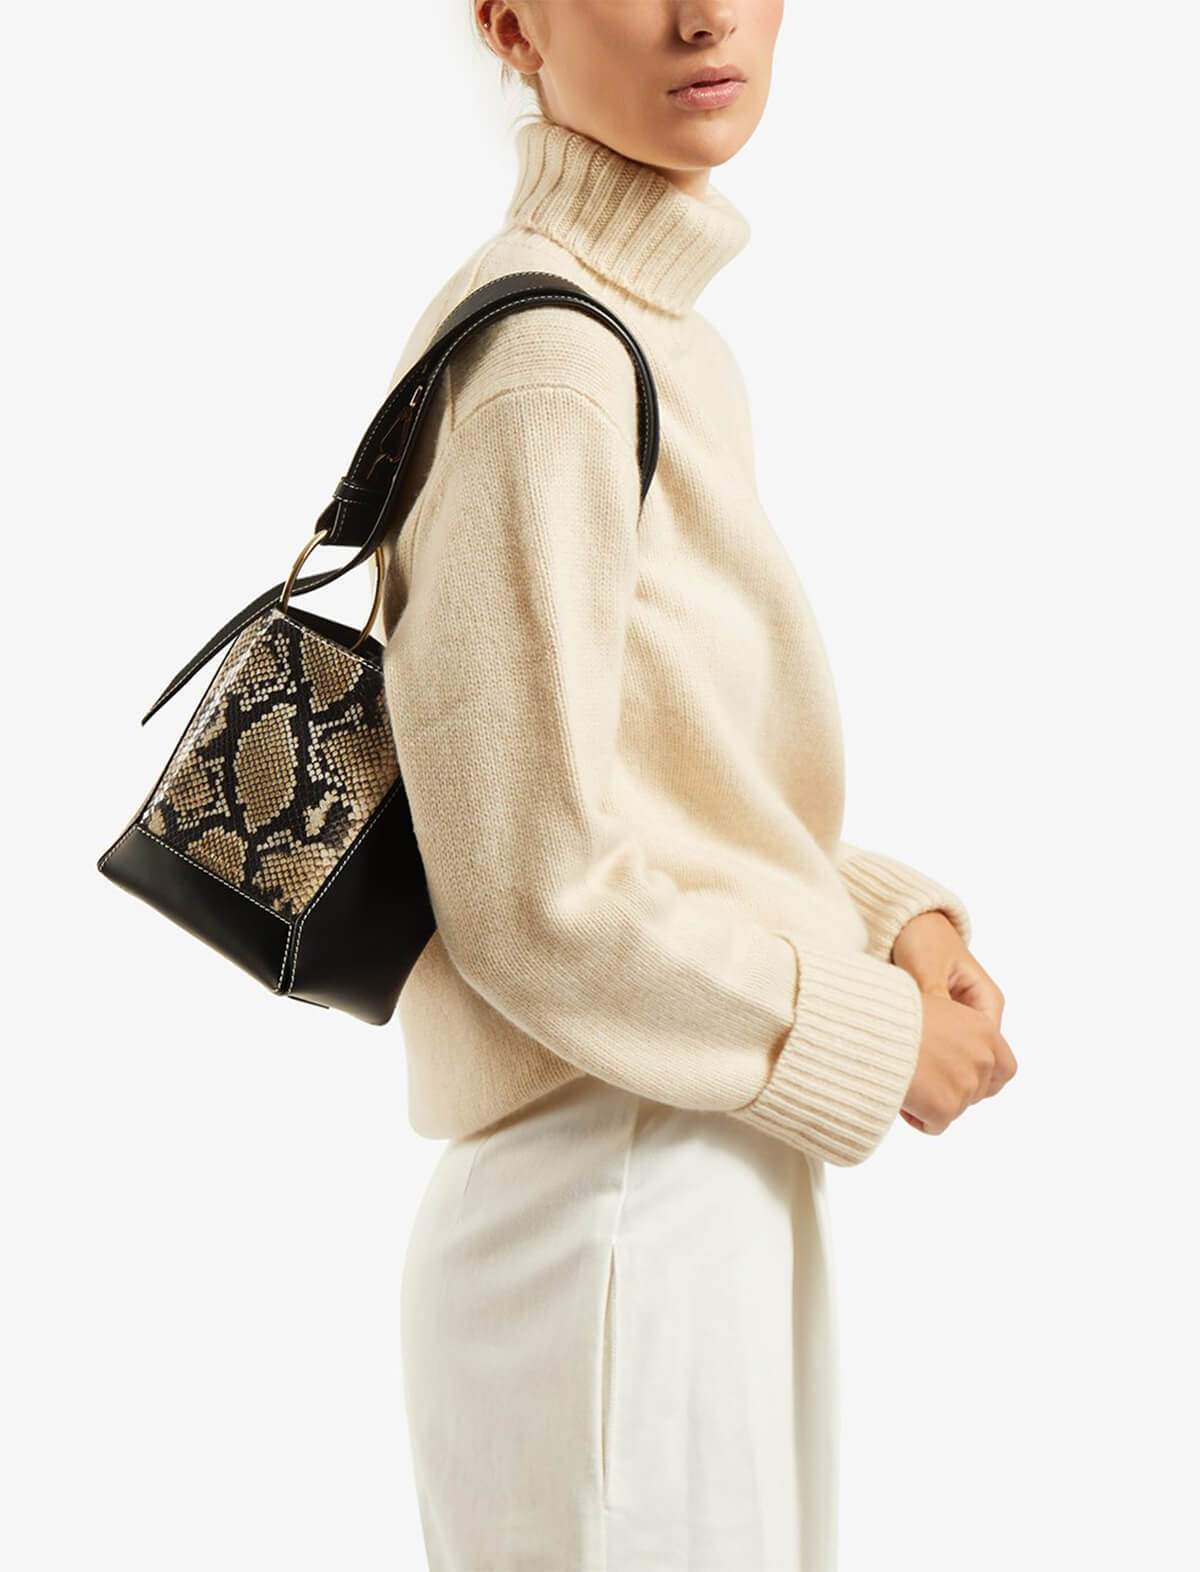 STRATHBERRY Lana Nano Bucket Bag in Black/ Desert